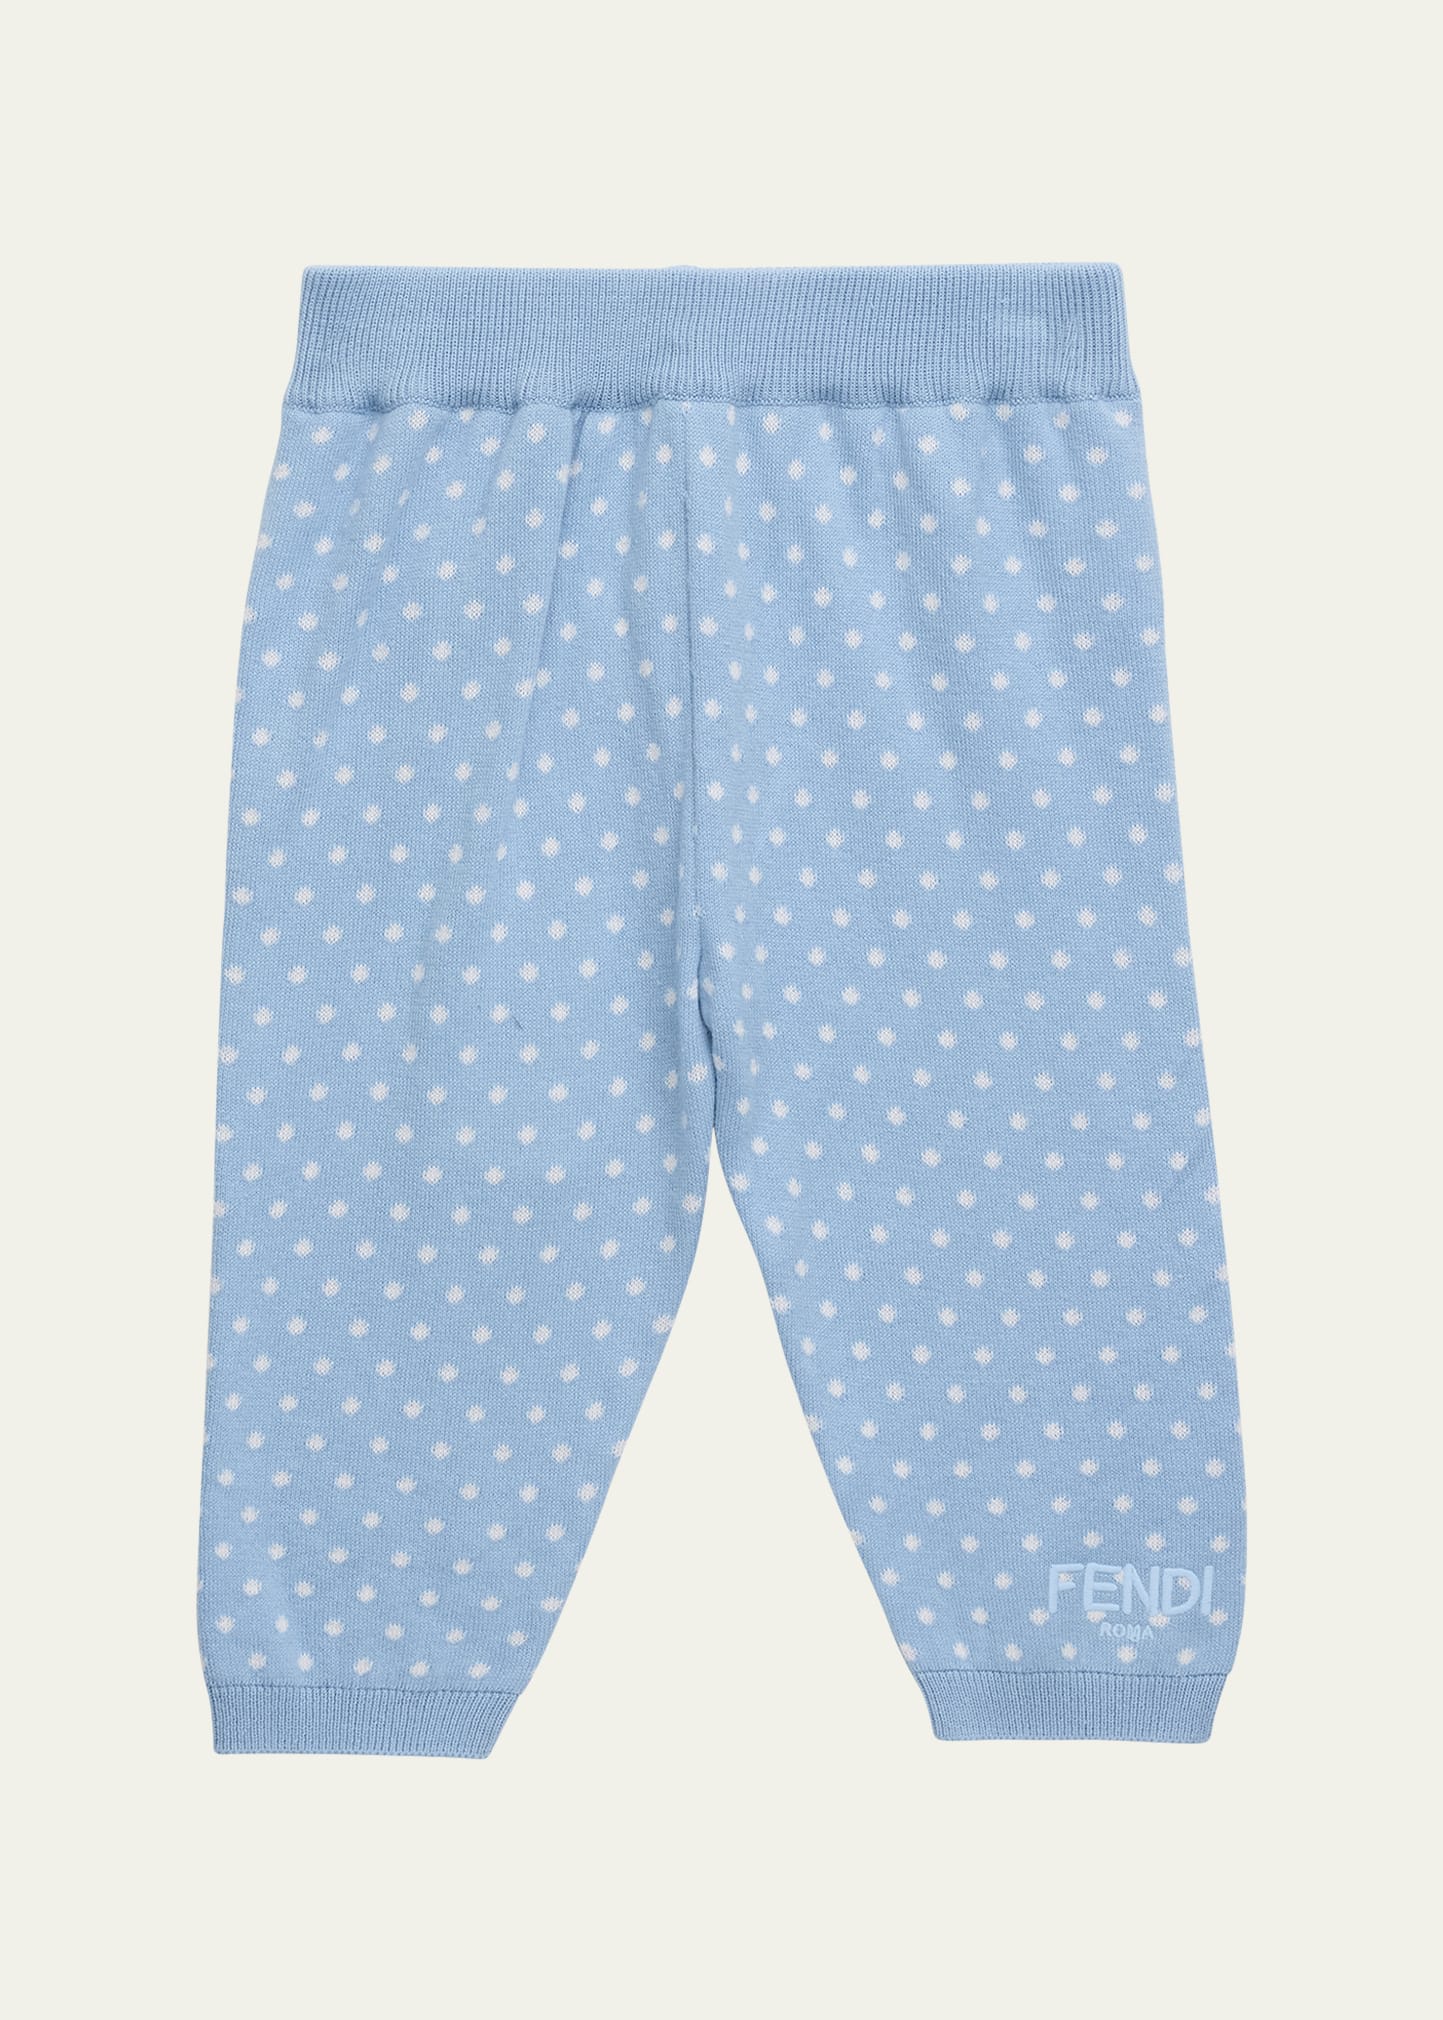 Fendi Kid's Knitted Allover Dot Pants In F19j4 Blue